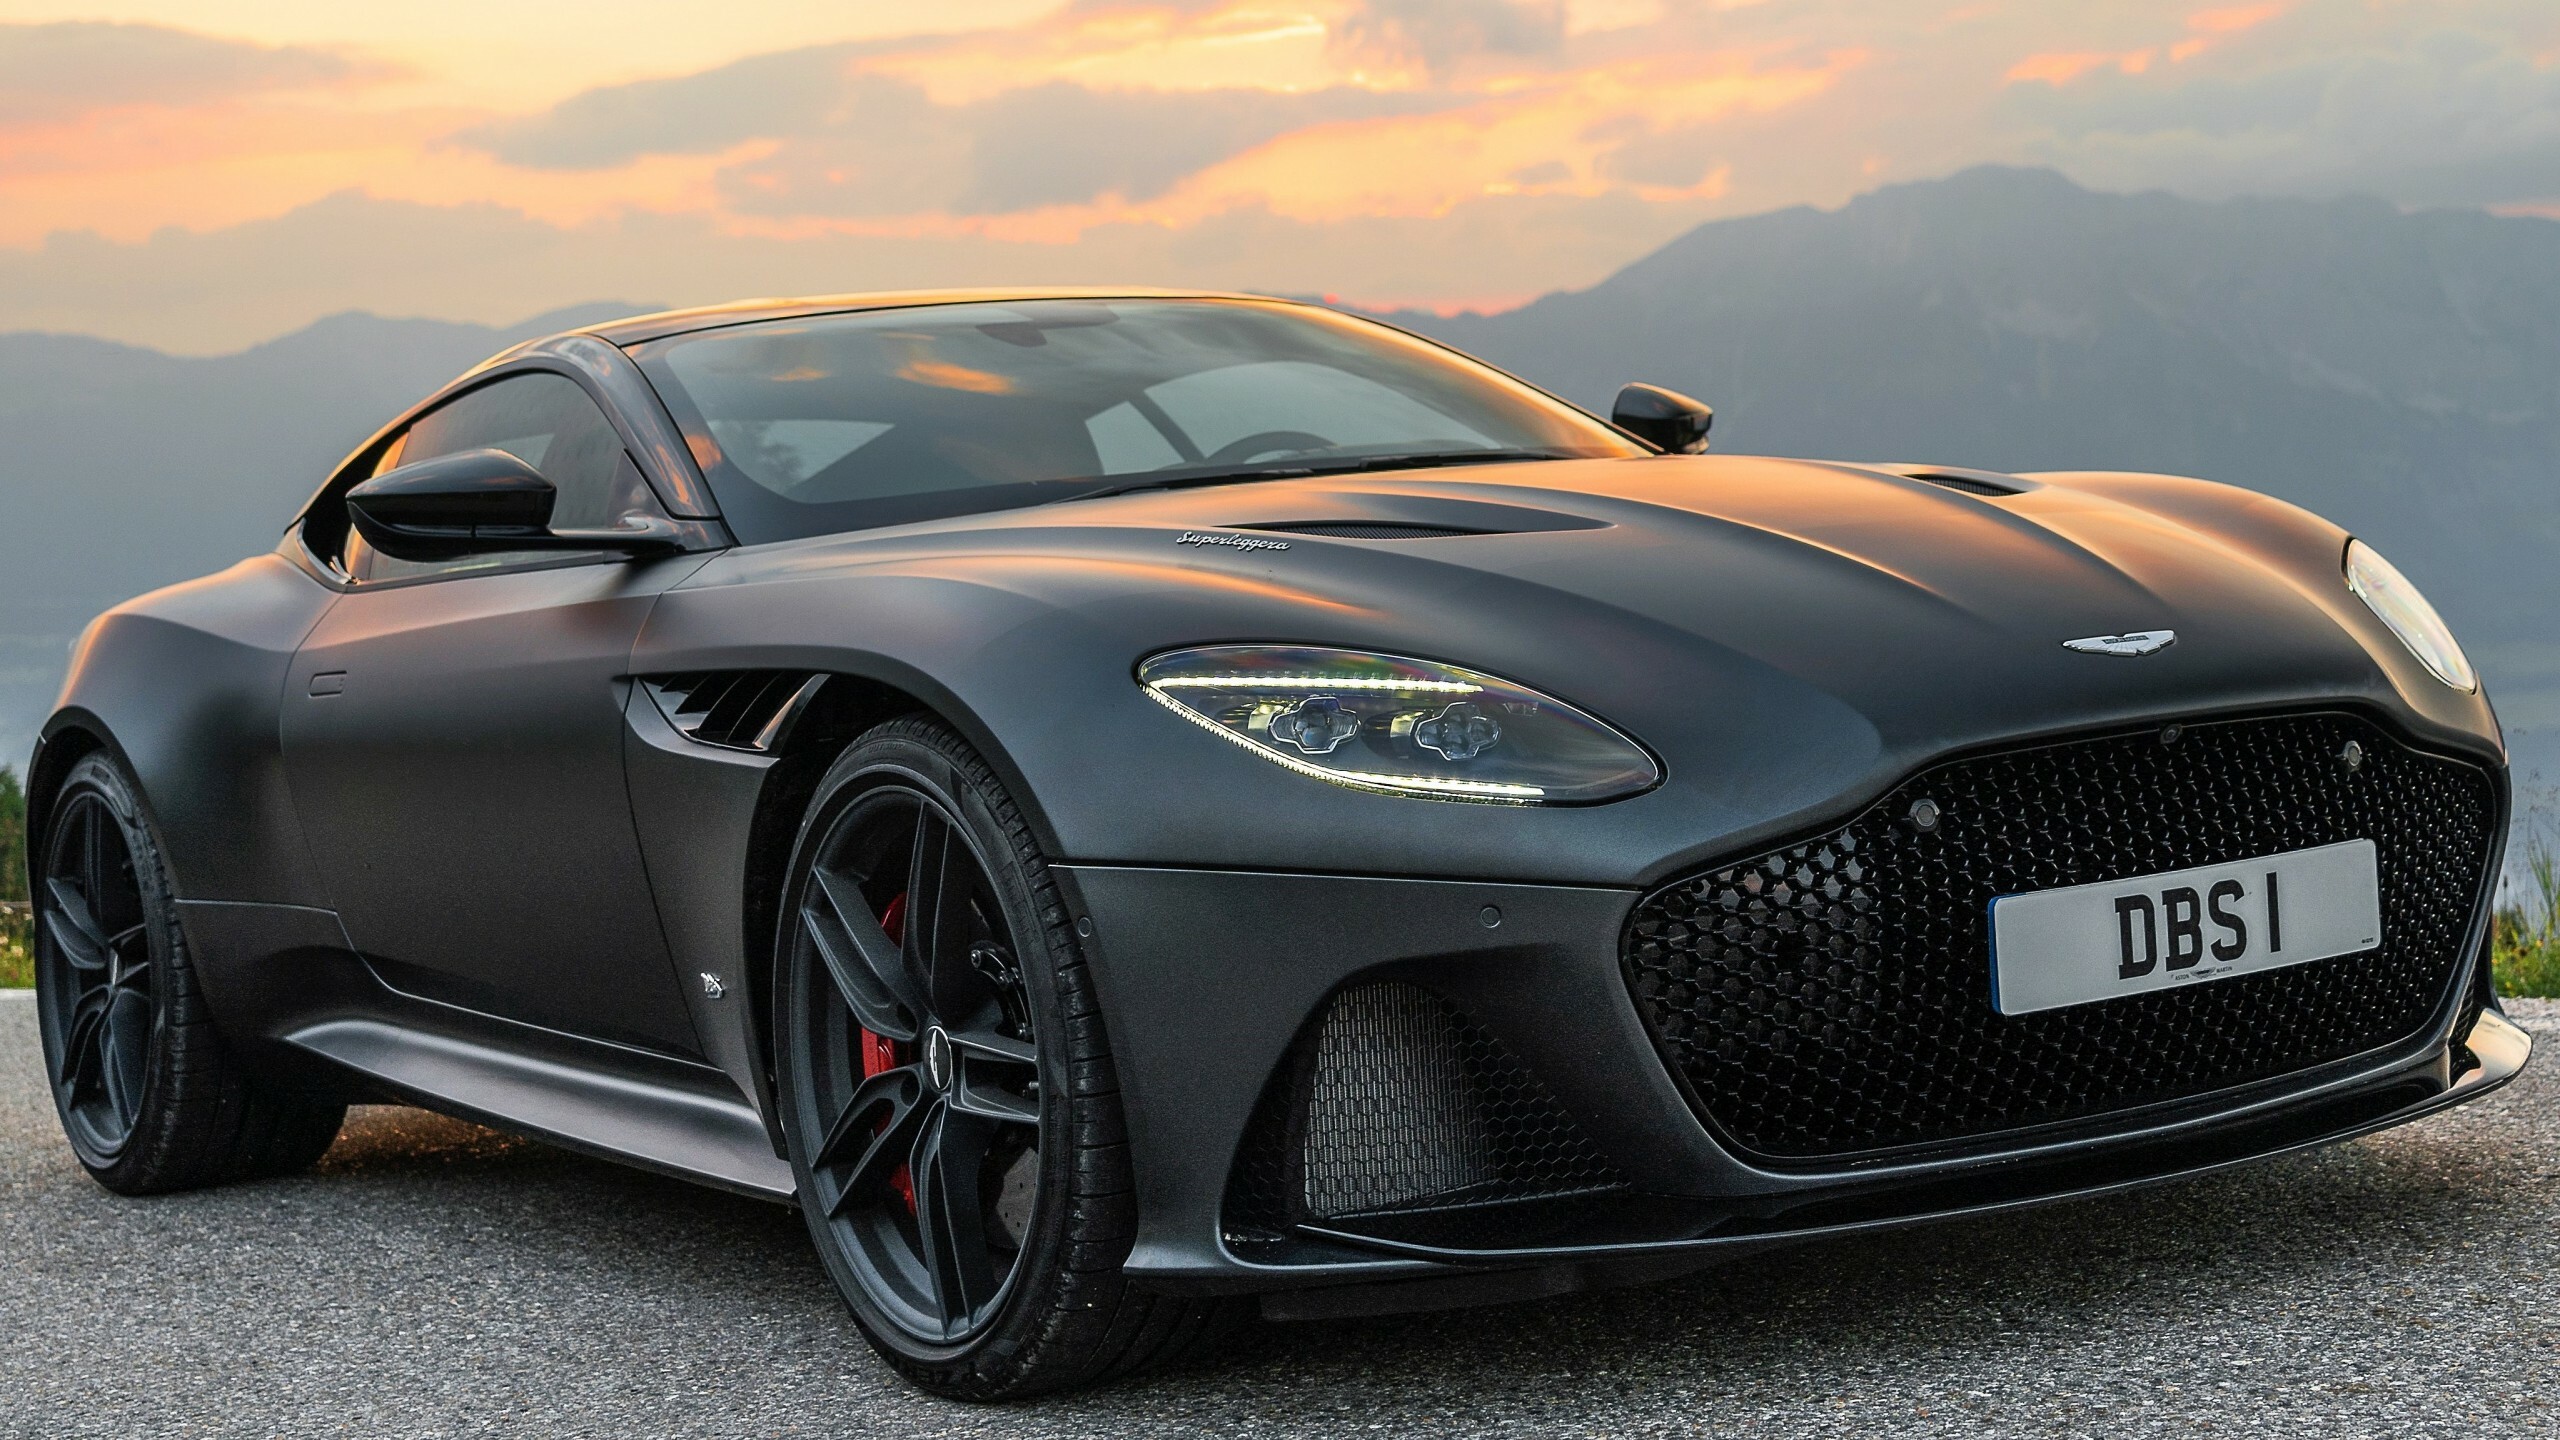 Aston Martin: Cars regarded as a British cultural icon, DBS Superleggera. 2560x1440 HD Wallpaper.